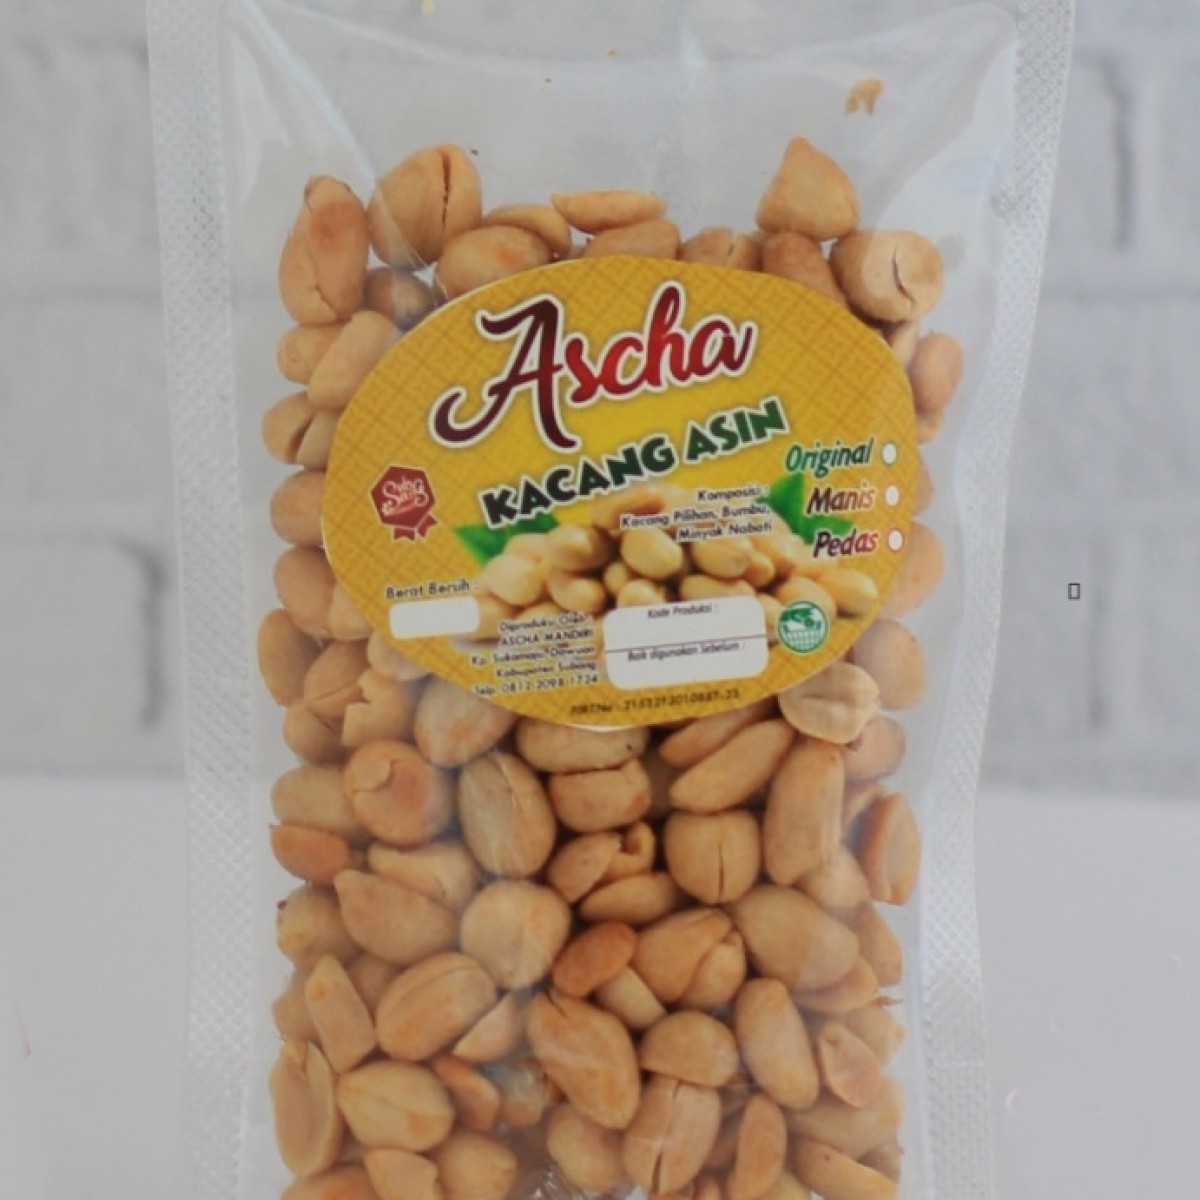 Kacang Asin Ascha